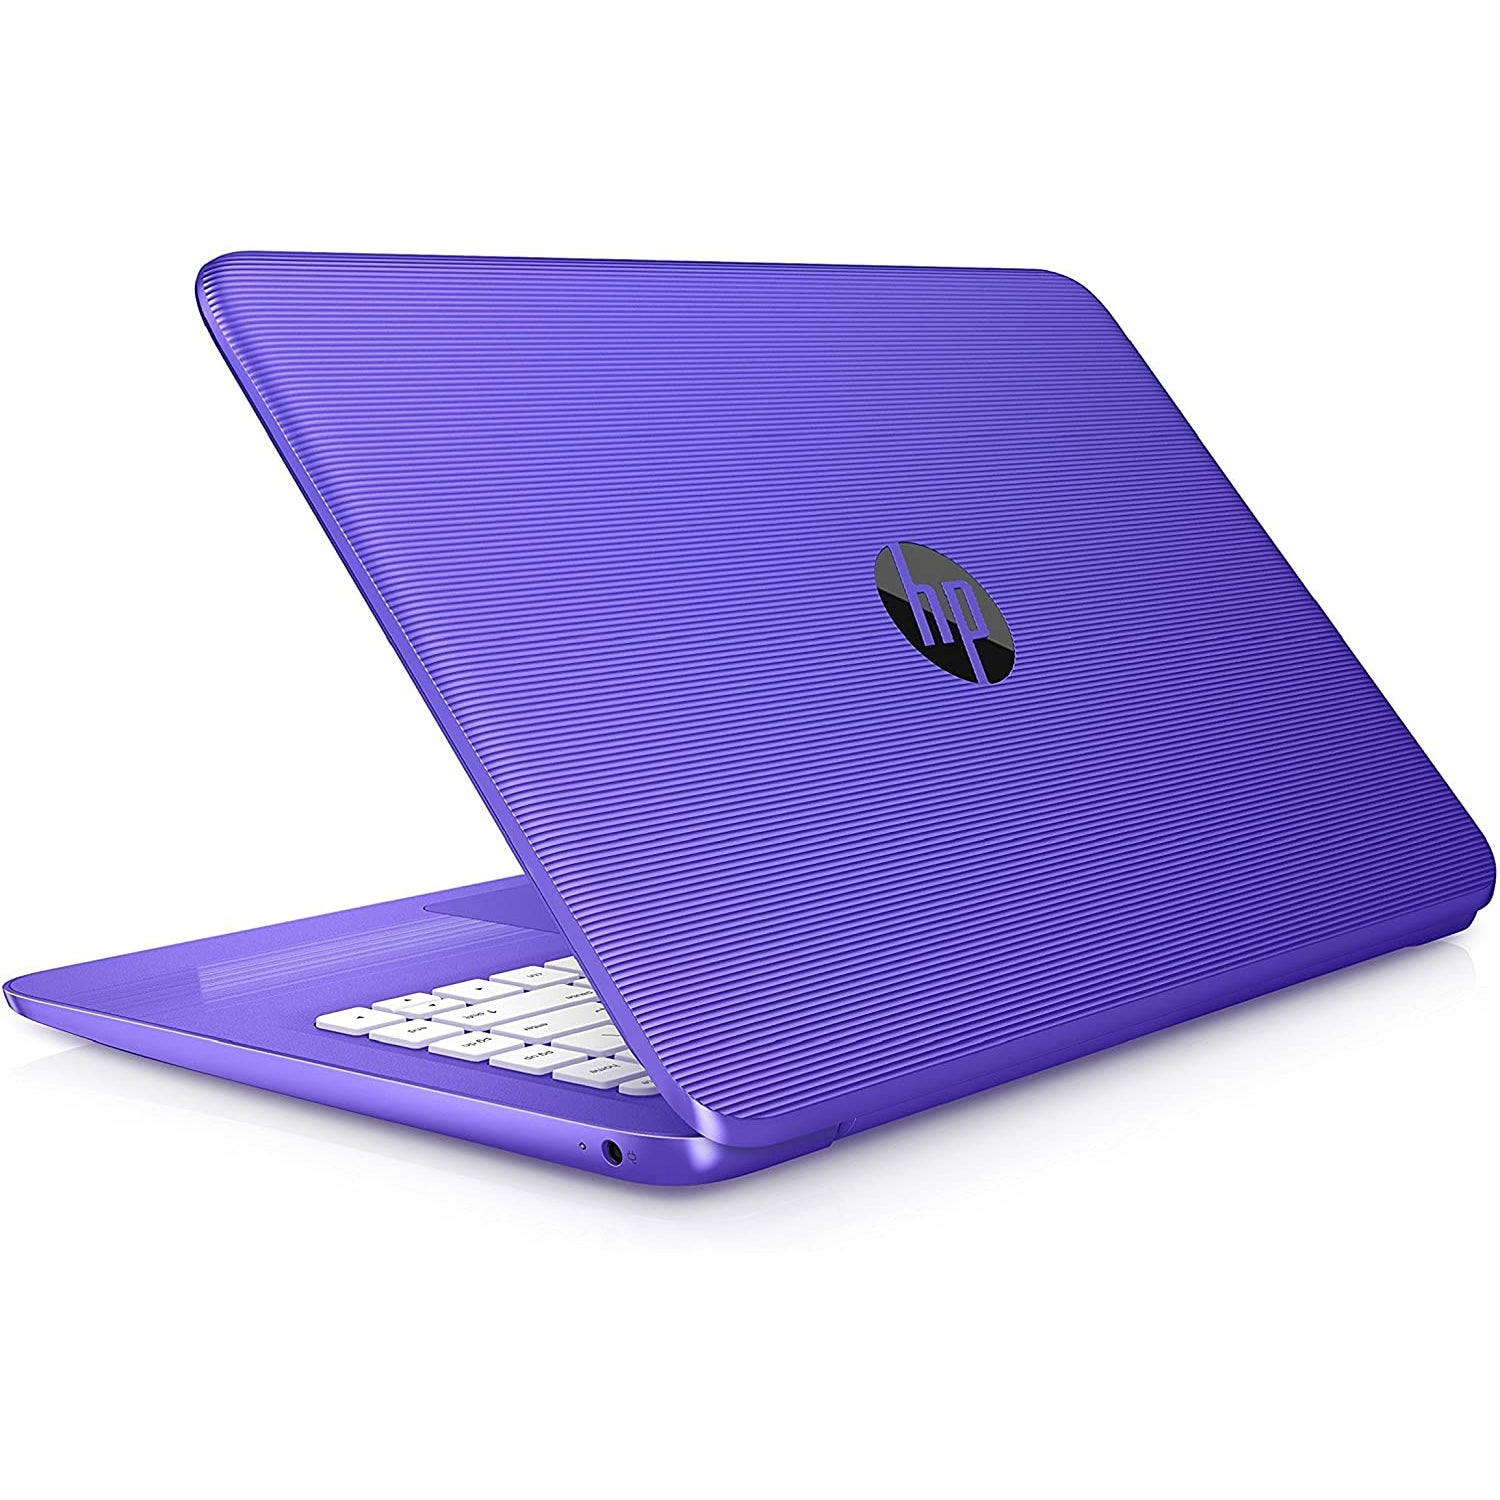 HP Stream 14-AX002NA, Intel Celeron, 4GB RAM, 32GB HDD, 14", Purple (Z3D81EA#ABU)